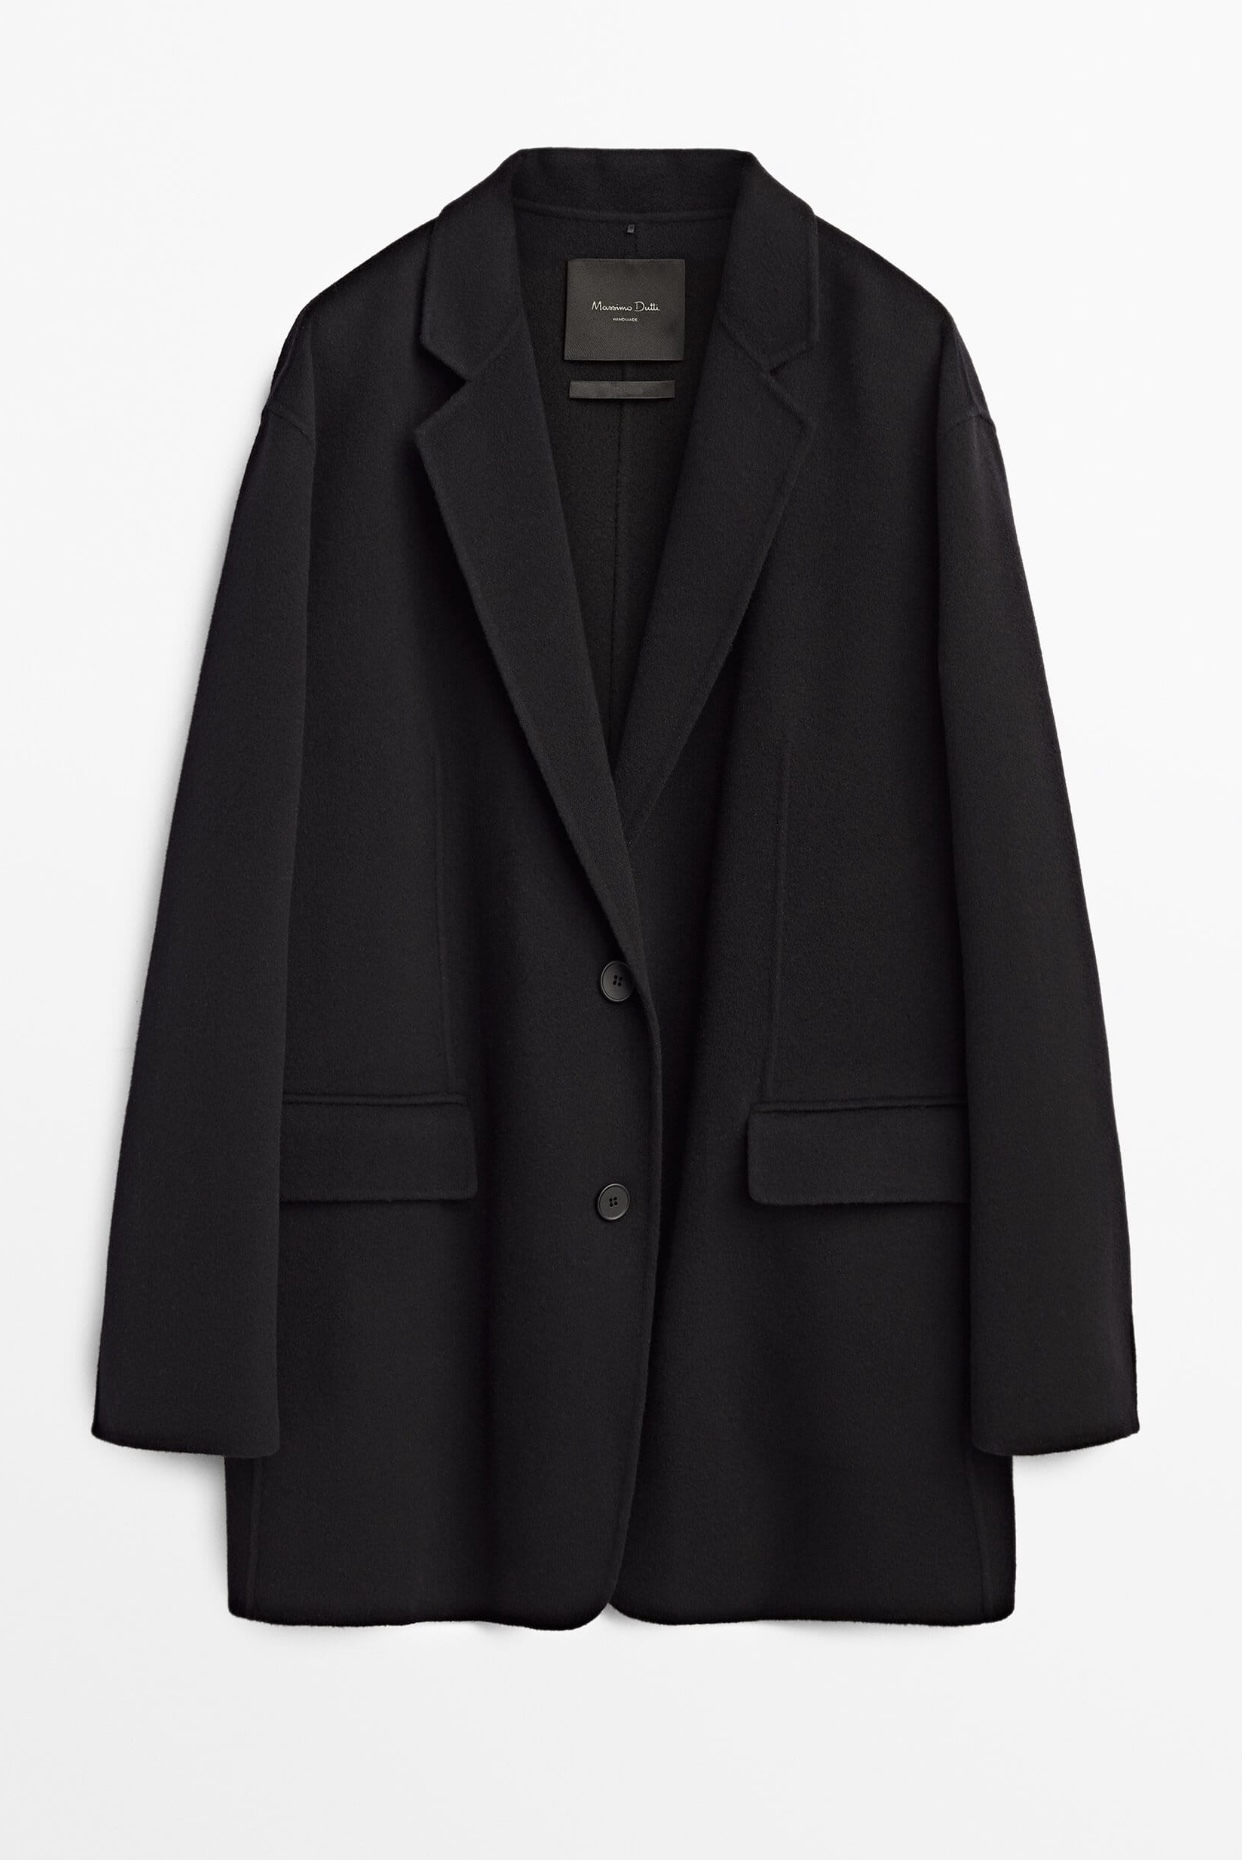 Abrigo negro lana oversize